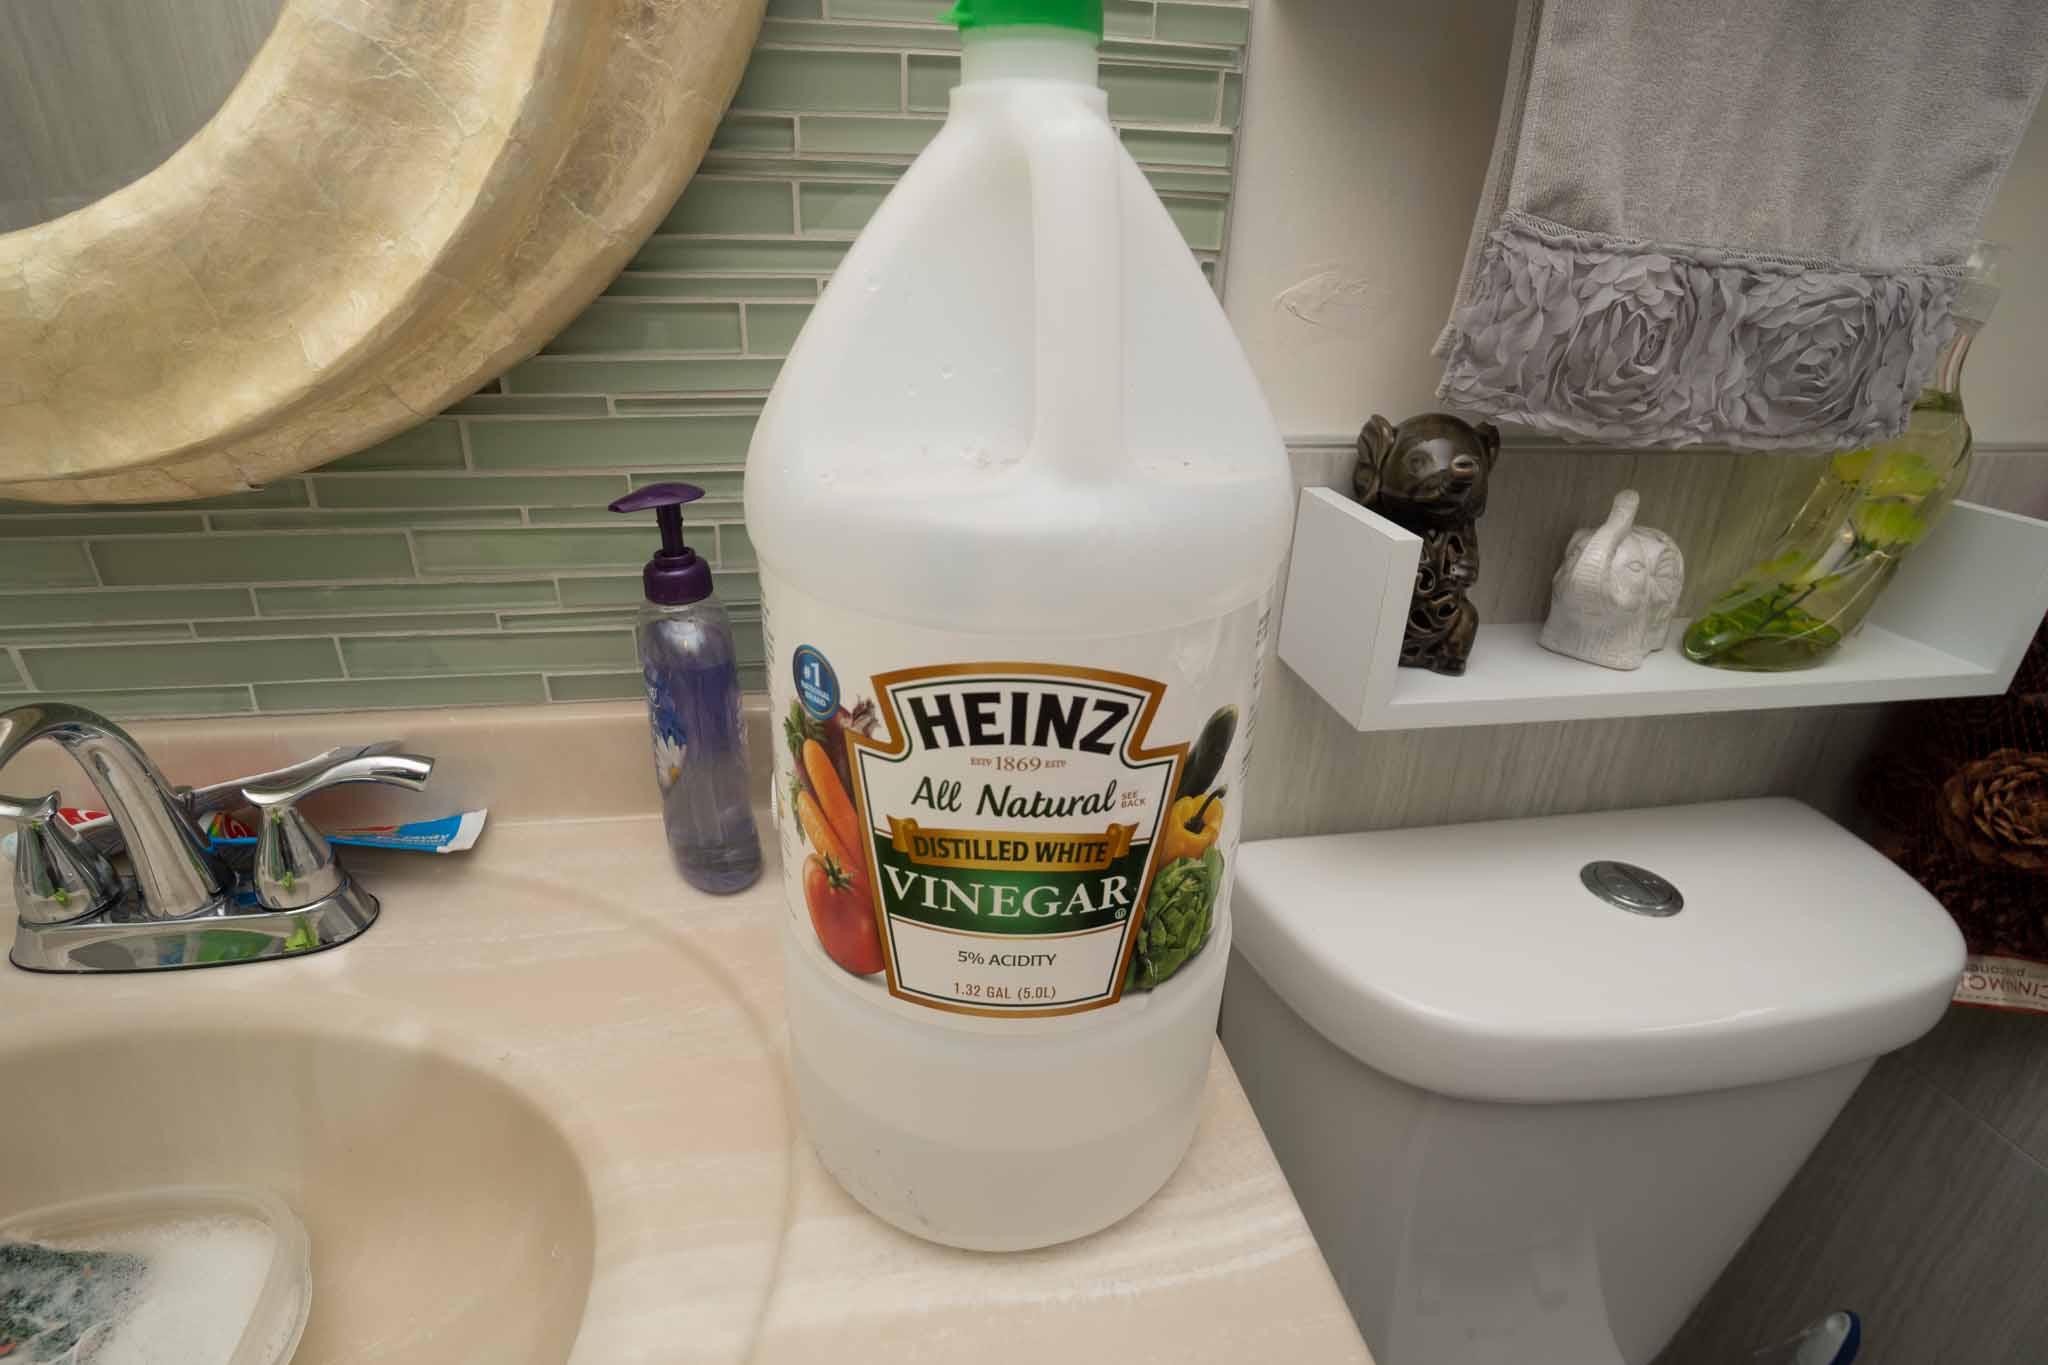 vinegar on bathroom countertop